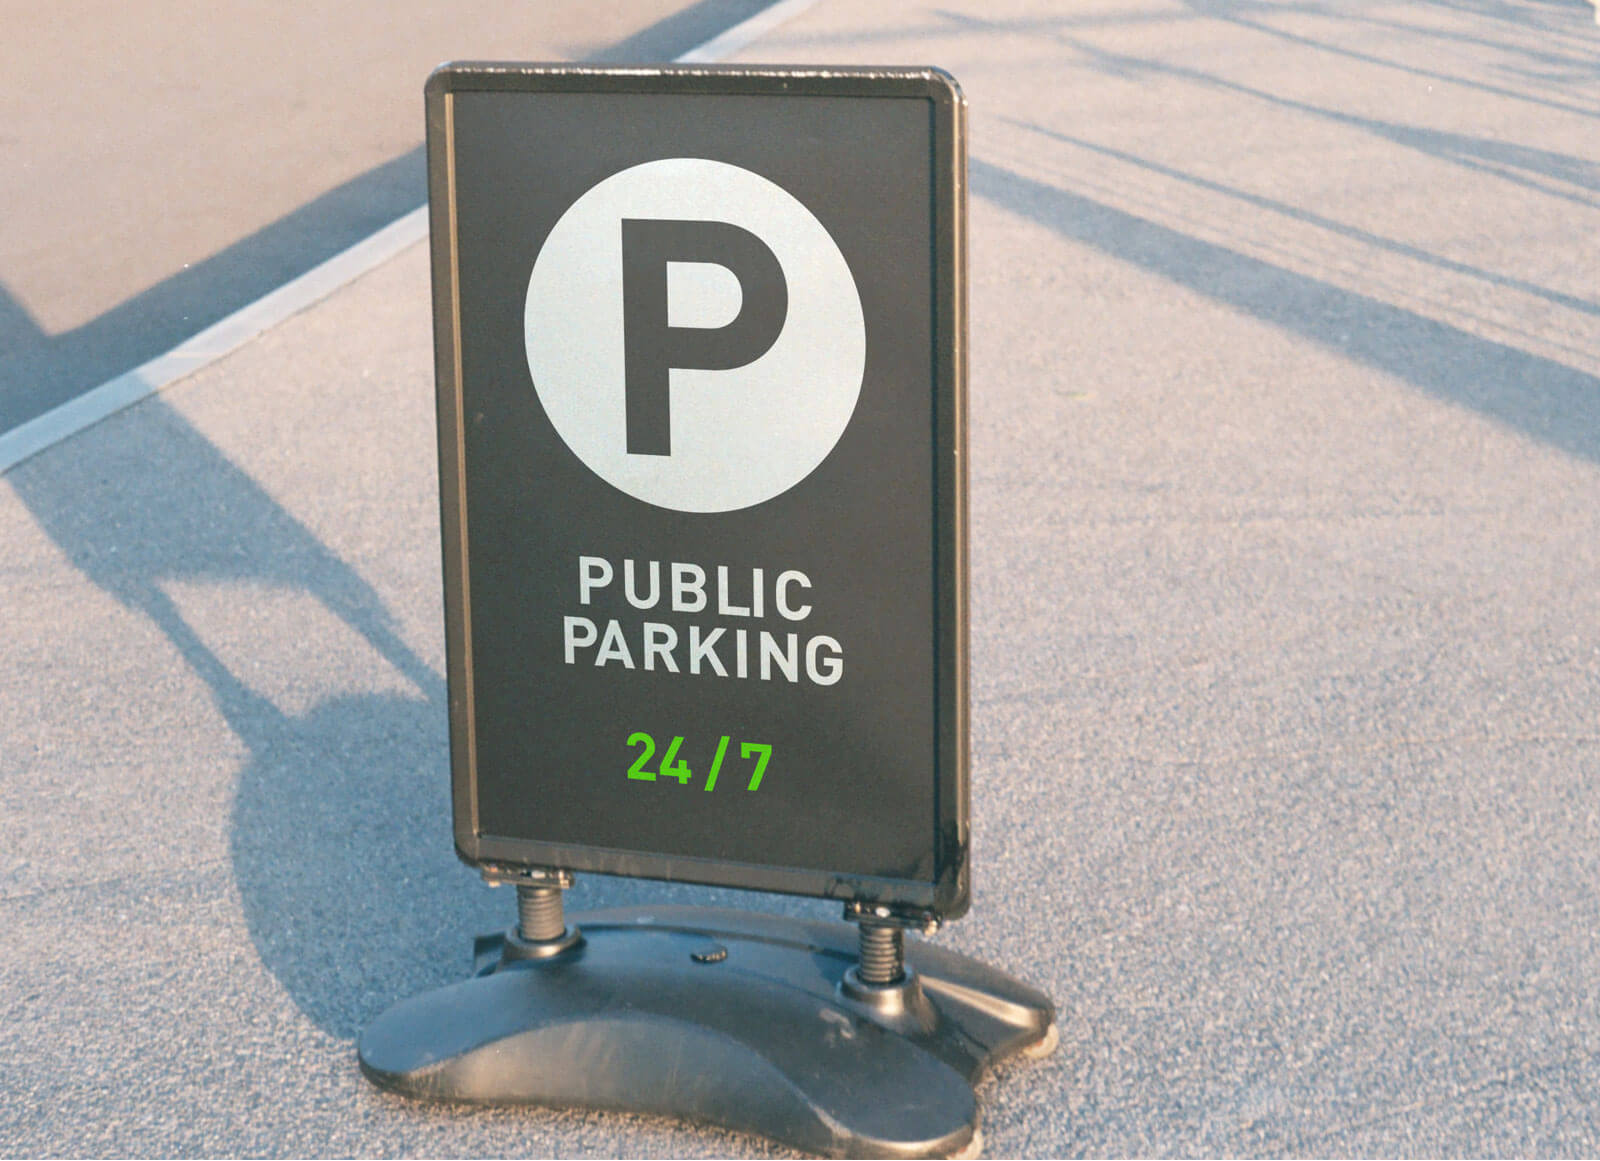 Free-Parking-Awareness-Signage-Mockup-PSD